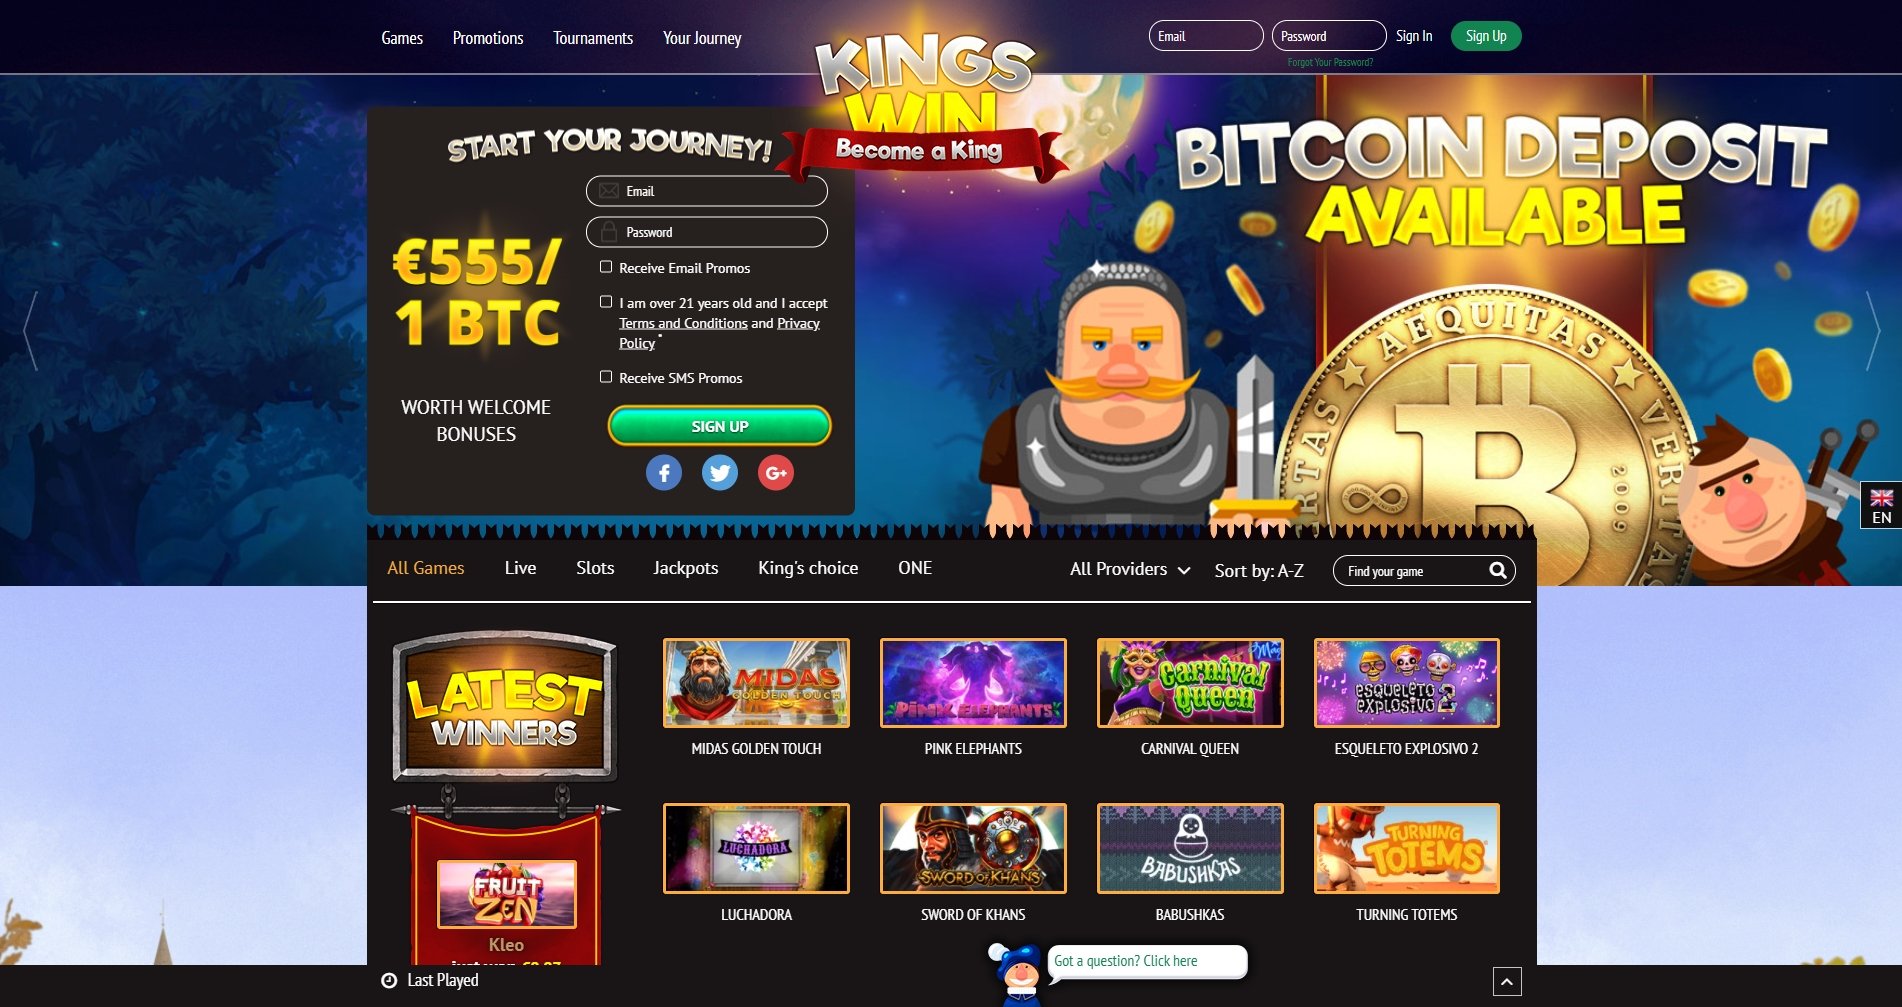 Kingswin Casino Review And Bonus Codes